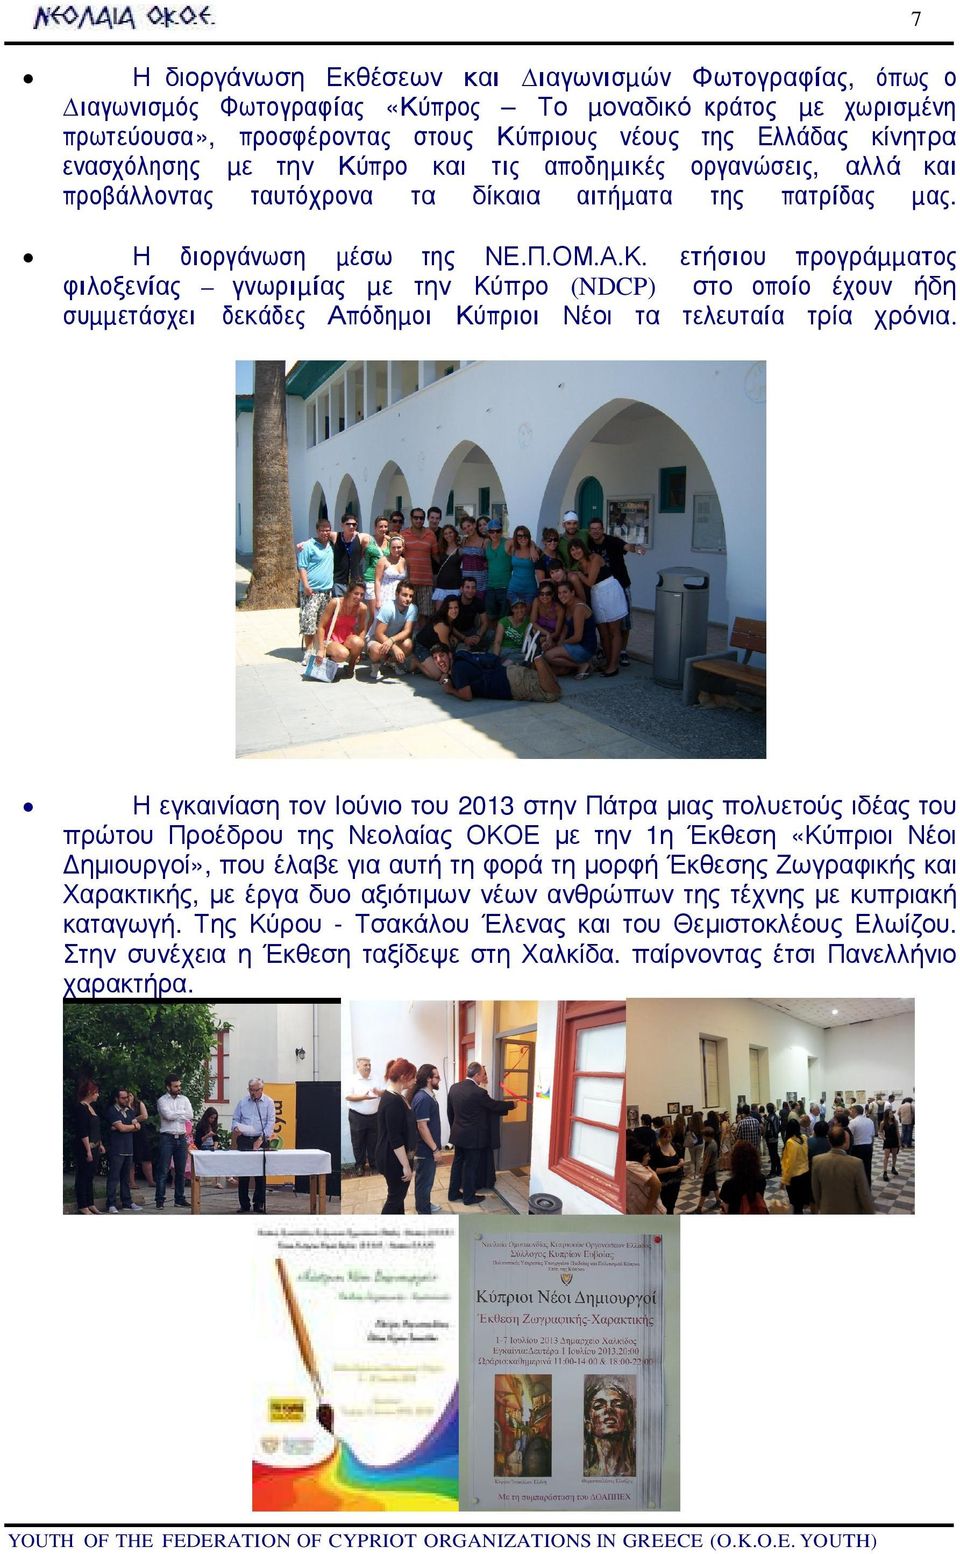 7 Η εγκαινίαση τον Ιούνιο του 2013 στην Πάτρα µιας πολυετούς ιδέας του πρώτου Προέδρου της Νεολαίας ΟΚΟΕ µε την 1η Έκθεση «Κύπριοι Νέοι ηµιουργοί», που έλαβε για αυτή τη φορά τη µορφή Έκθεσης